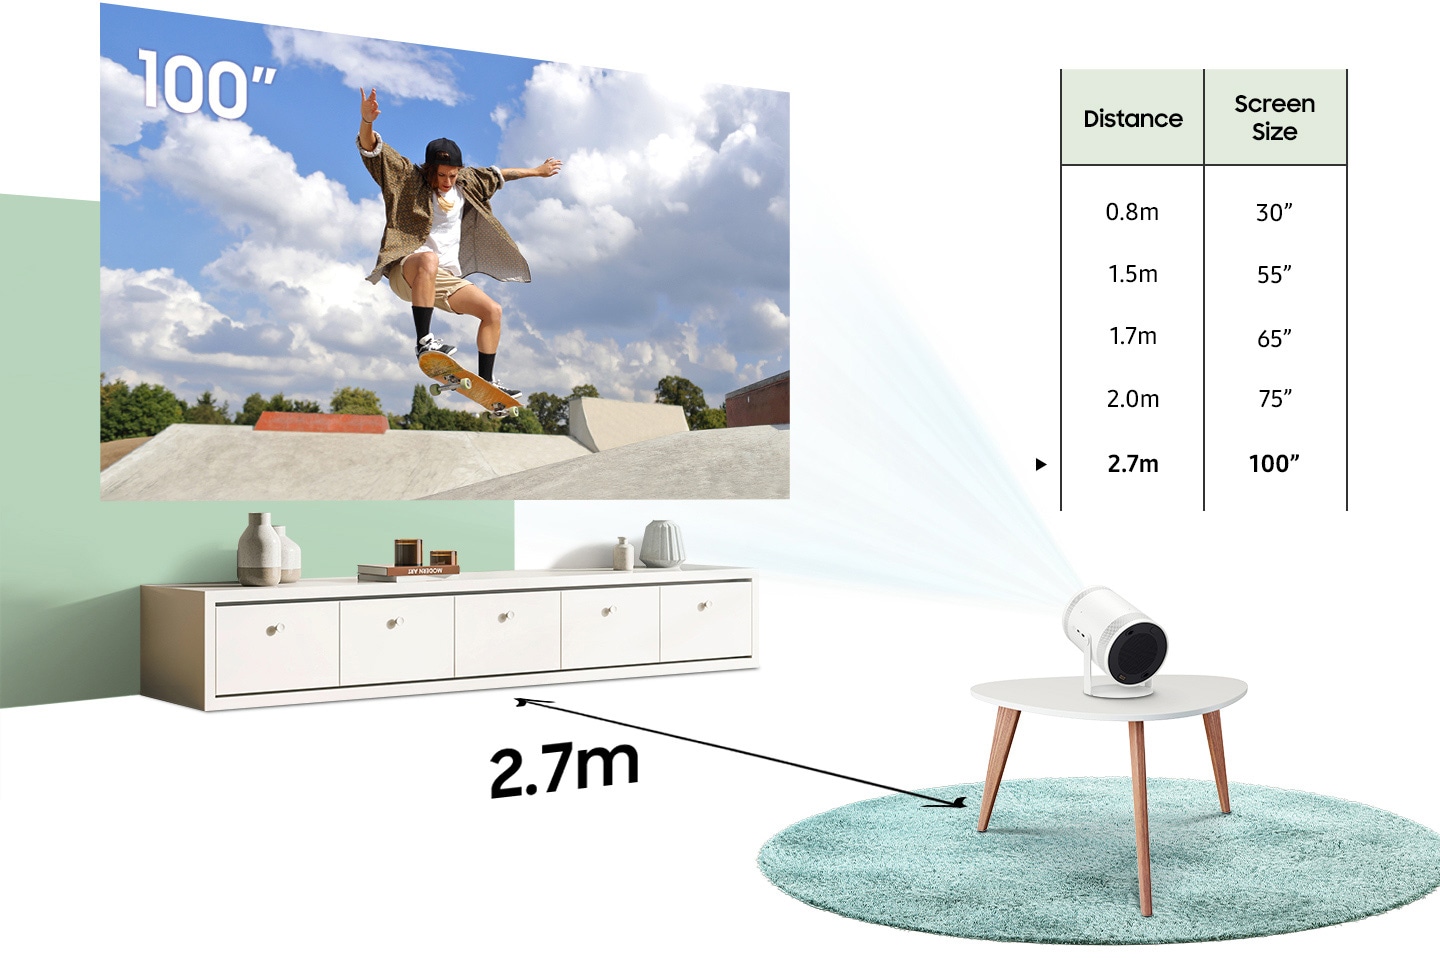 Как Freestyle движутся от 0.8 метра от стены к 1.5, 1.7, 2.0, и 2.7 метра, разработанные схемы размеры от 30 метров до 55, 65, 75, и 100 метров.